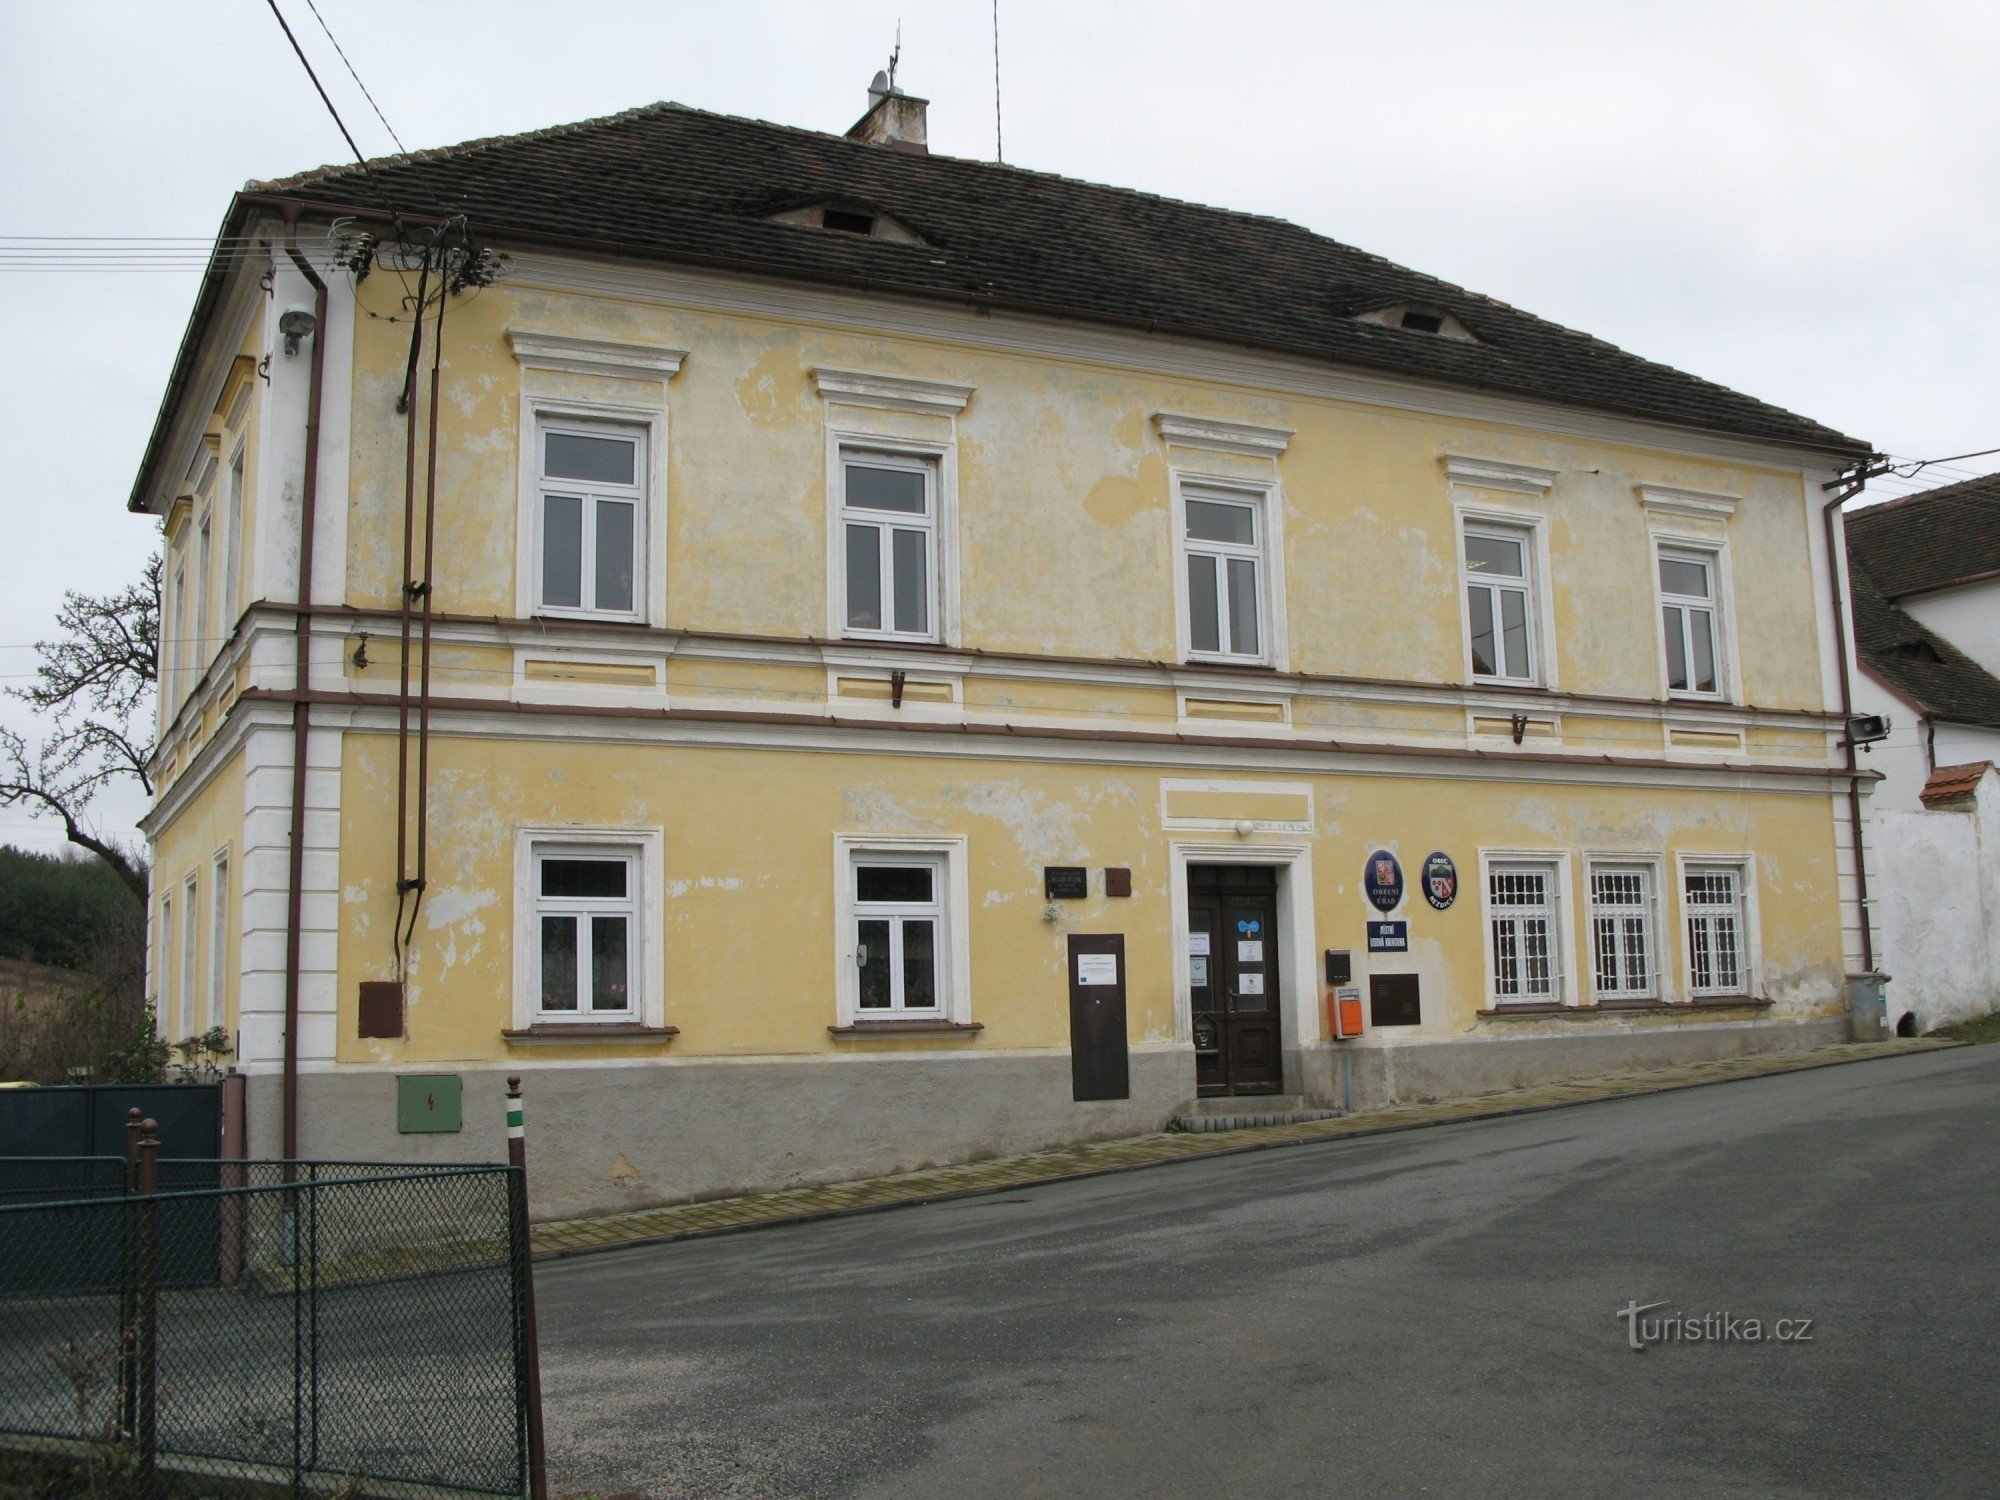 Nezdice - kommunkontor, tidigare kommunal skola från 1847